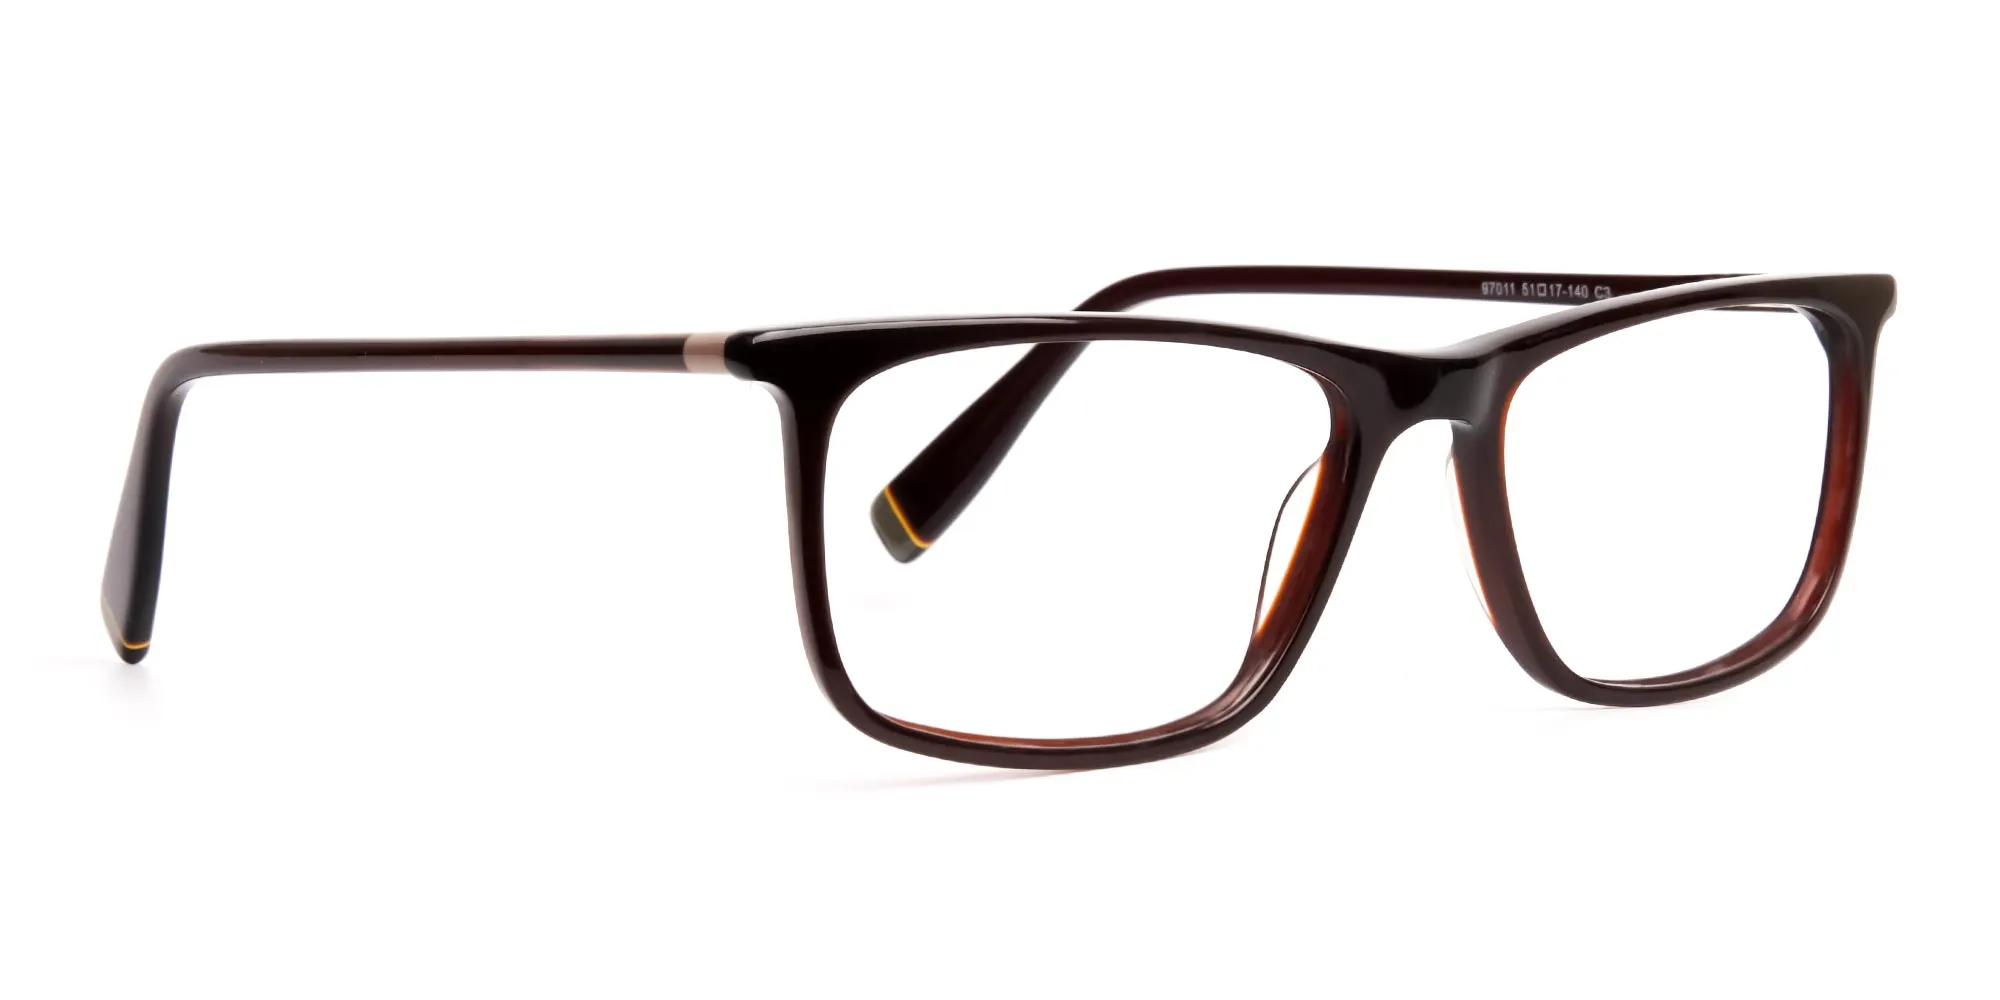 dark-brown-glasses-rectangular-shape-frames-2